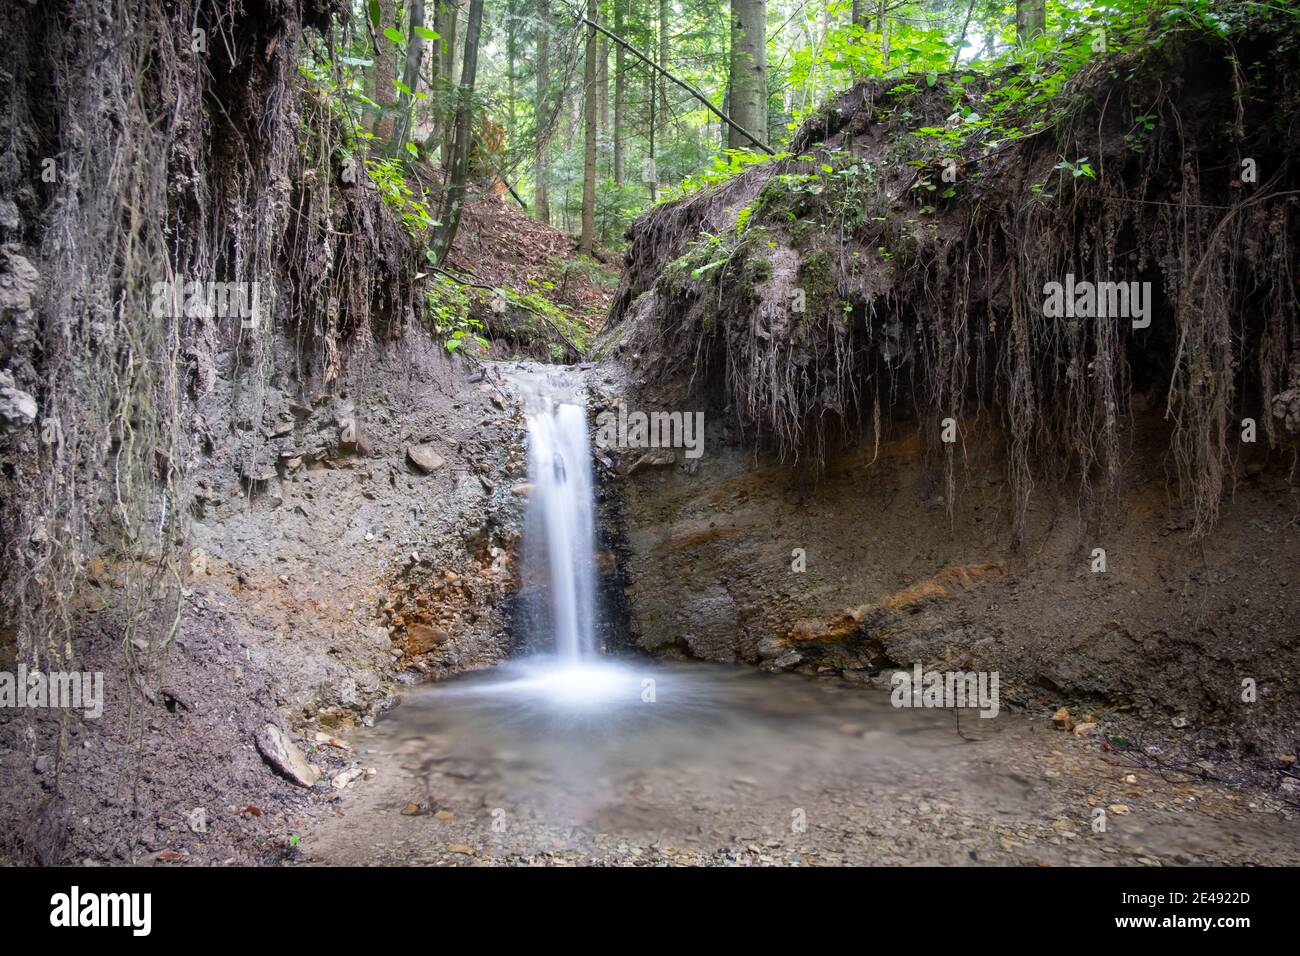 Ruisseau de montagne clair dans la forêt luxuriante. Scène sauvage avec de l'eau pure et des racines d'arbres. Arrière-plan de la nature Banque D'Images